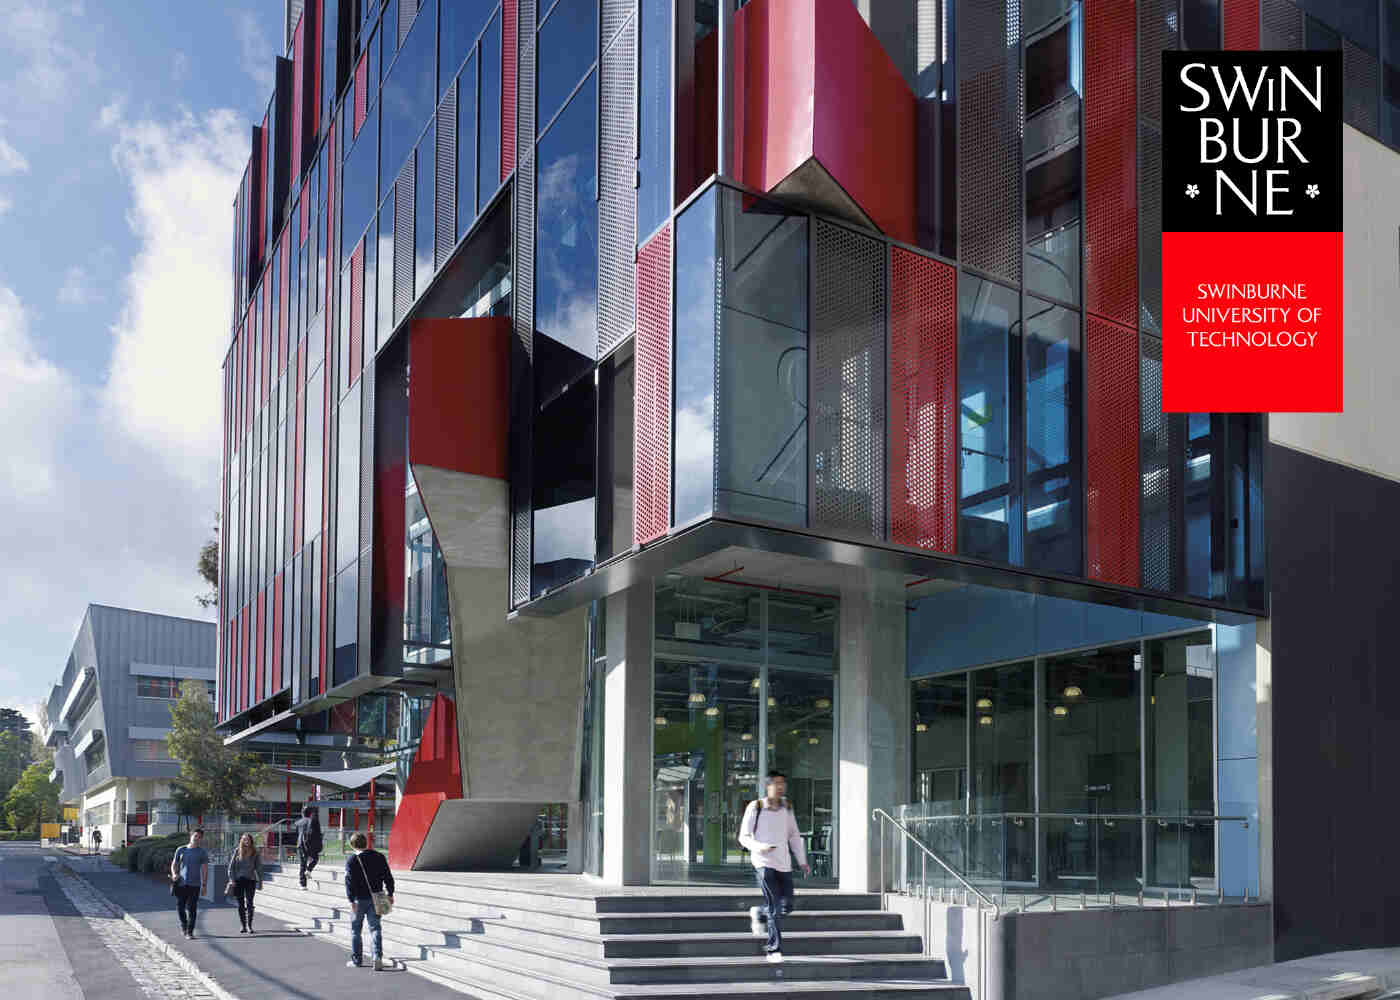 Syarat Cara Daftar Kuliah Di Swinburne University Of Technology Eca 2023 - Education Republic